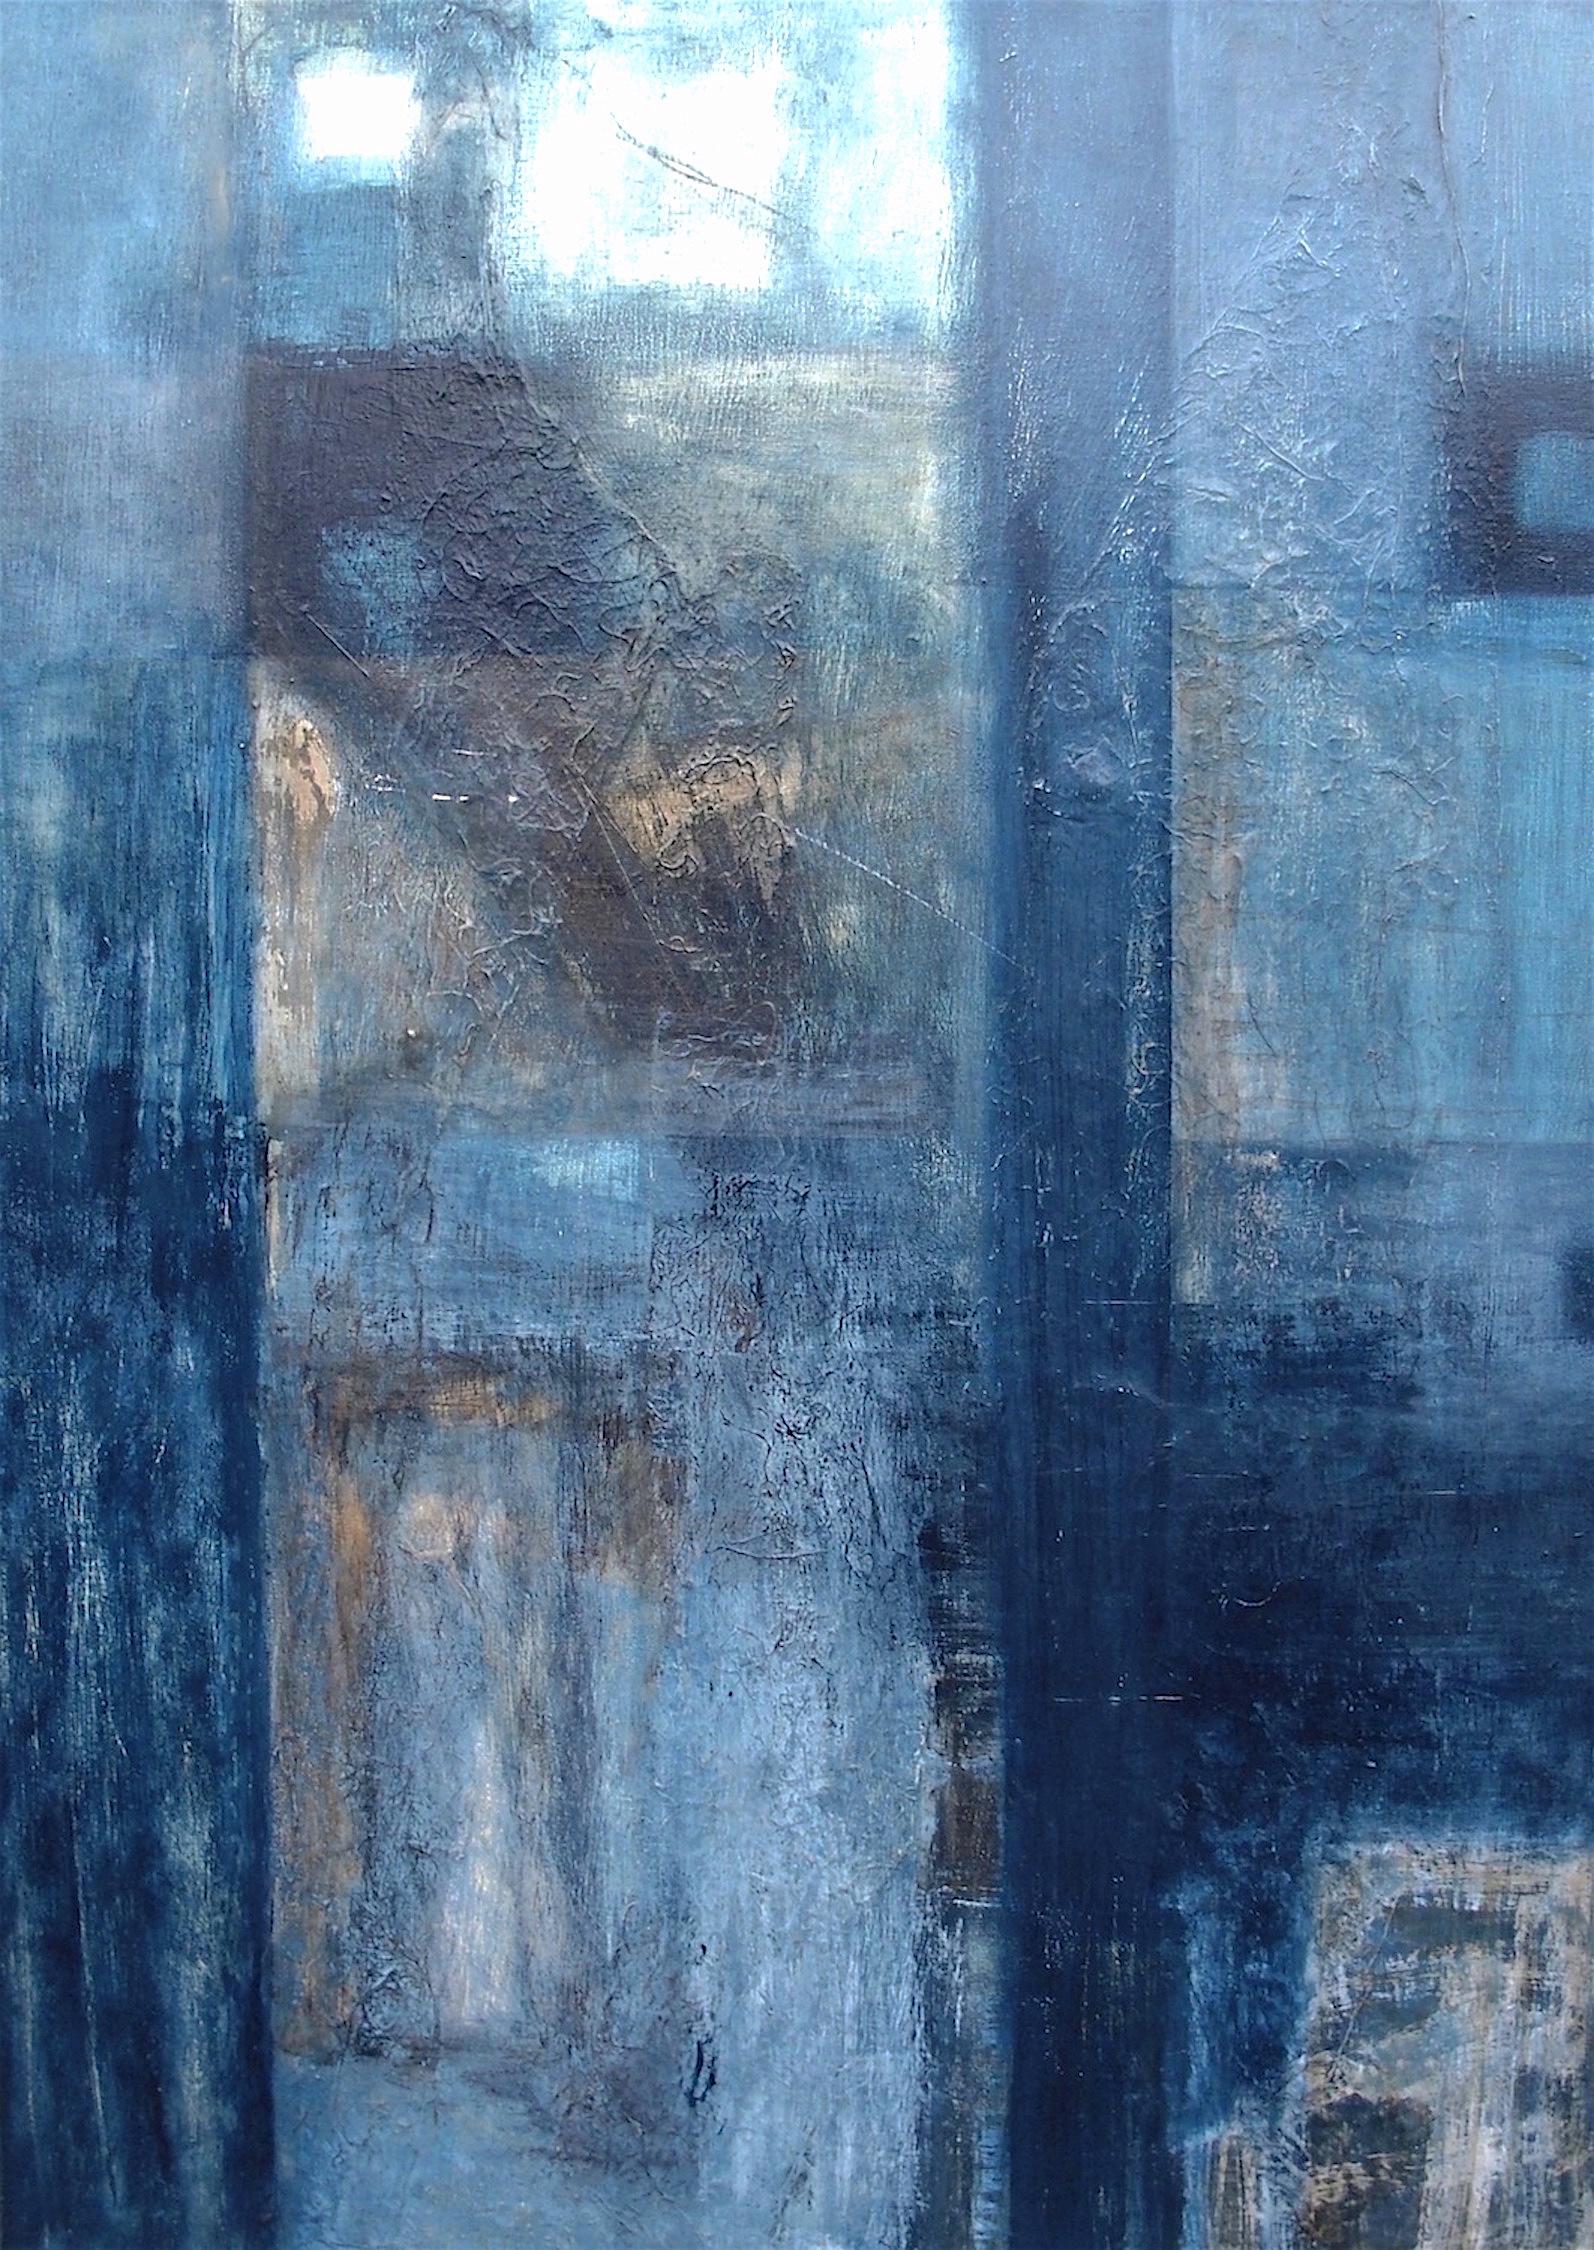 Birches bleues. Peinture abstraite contemporaine en techniques mixtes sur toile - Mixed Media Art de Patricia McParlin